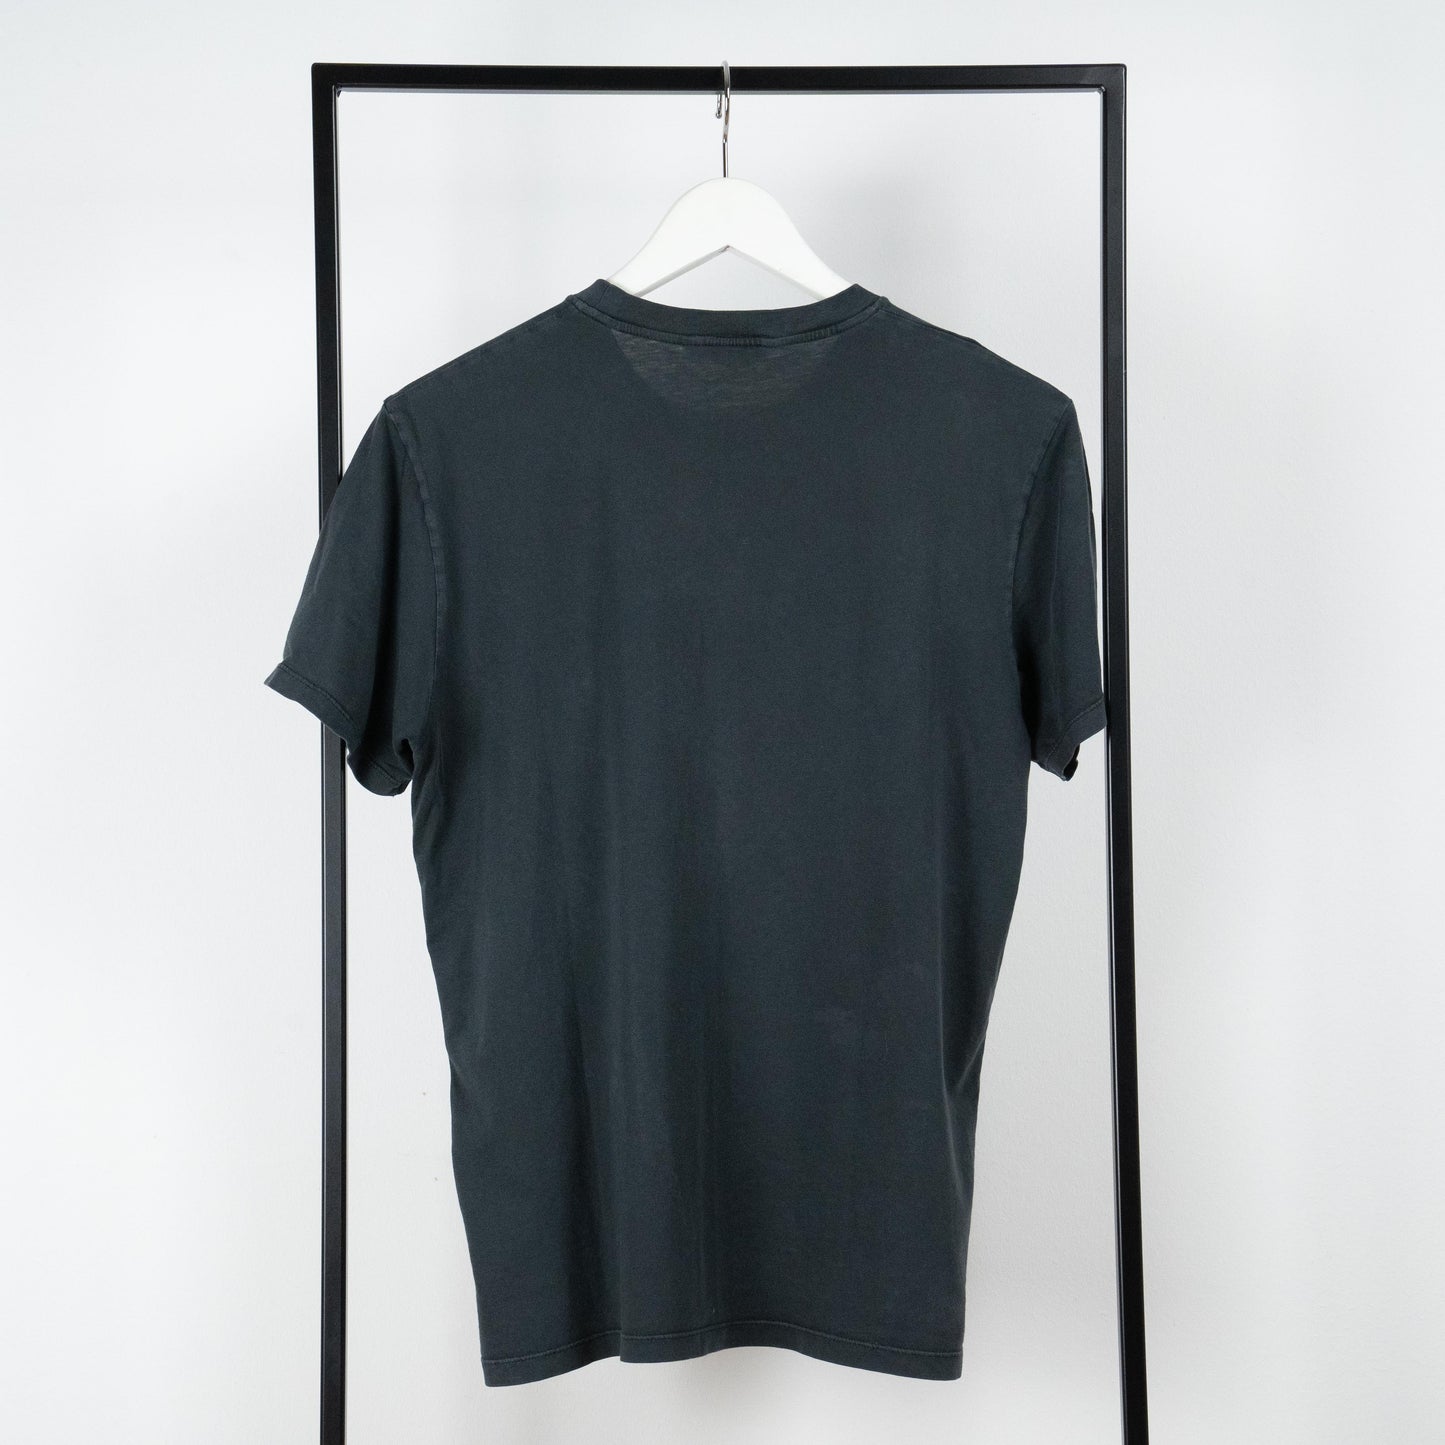 Hanger T-shirt